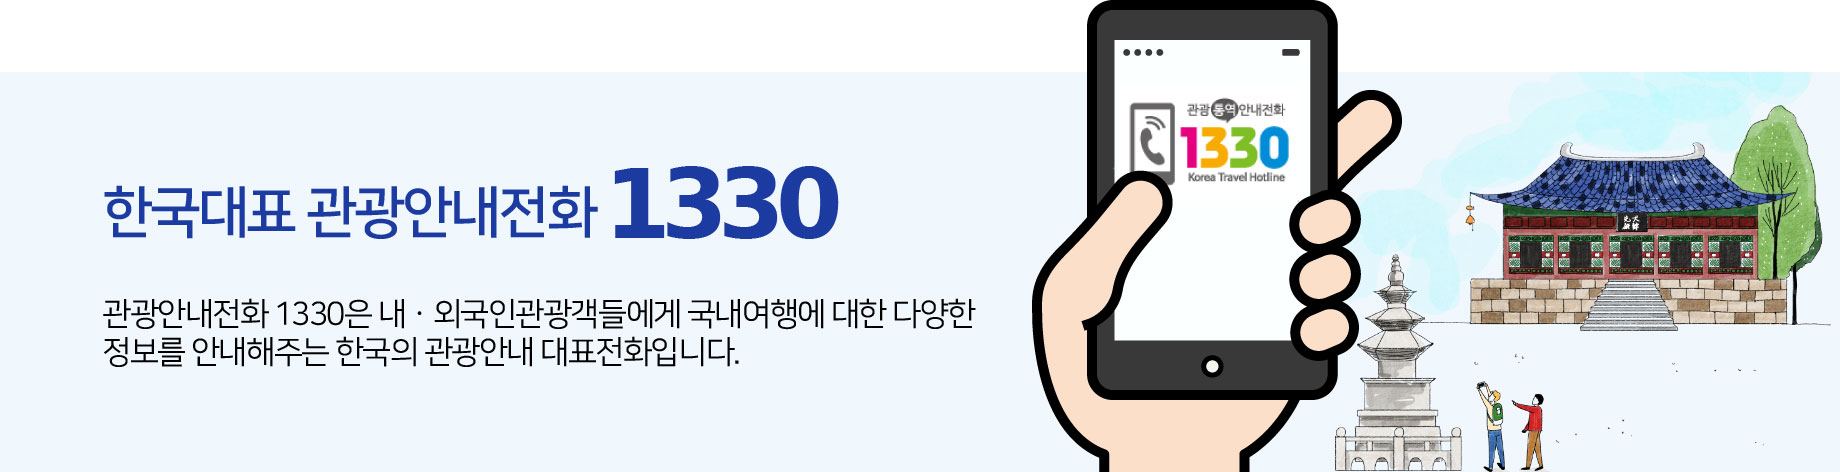 한국대표 관광안내전화 1330. 관광안내전화 1330은 내·외국인관광객들에게 국내여행에 대한 다양한 정보를 안내해주는 한국의 관광안내 대표전화입니다.